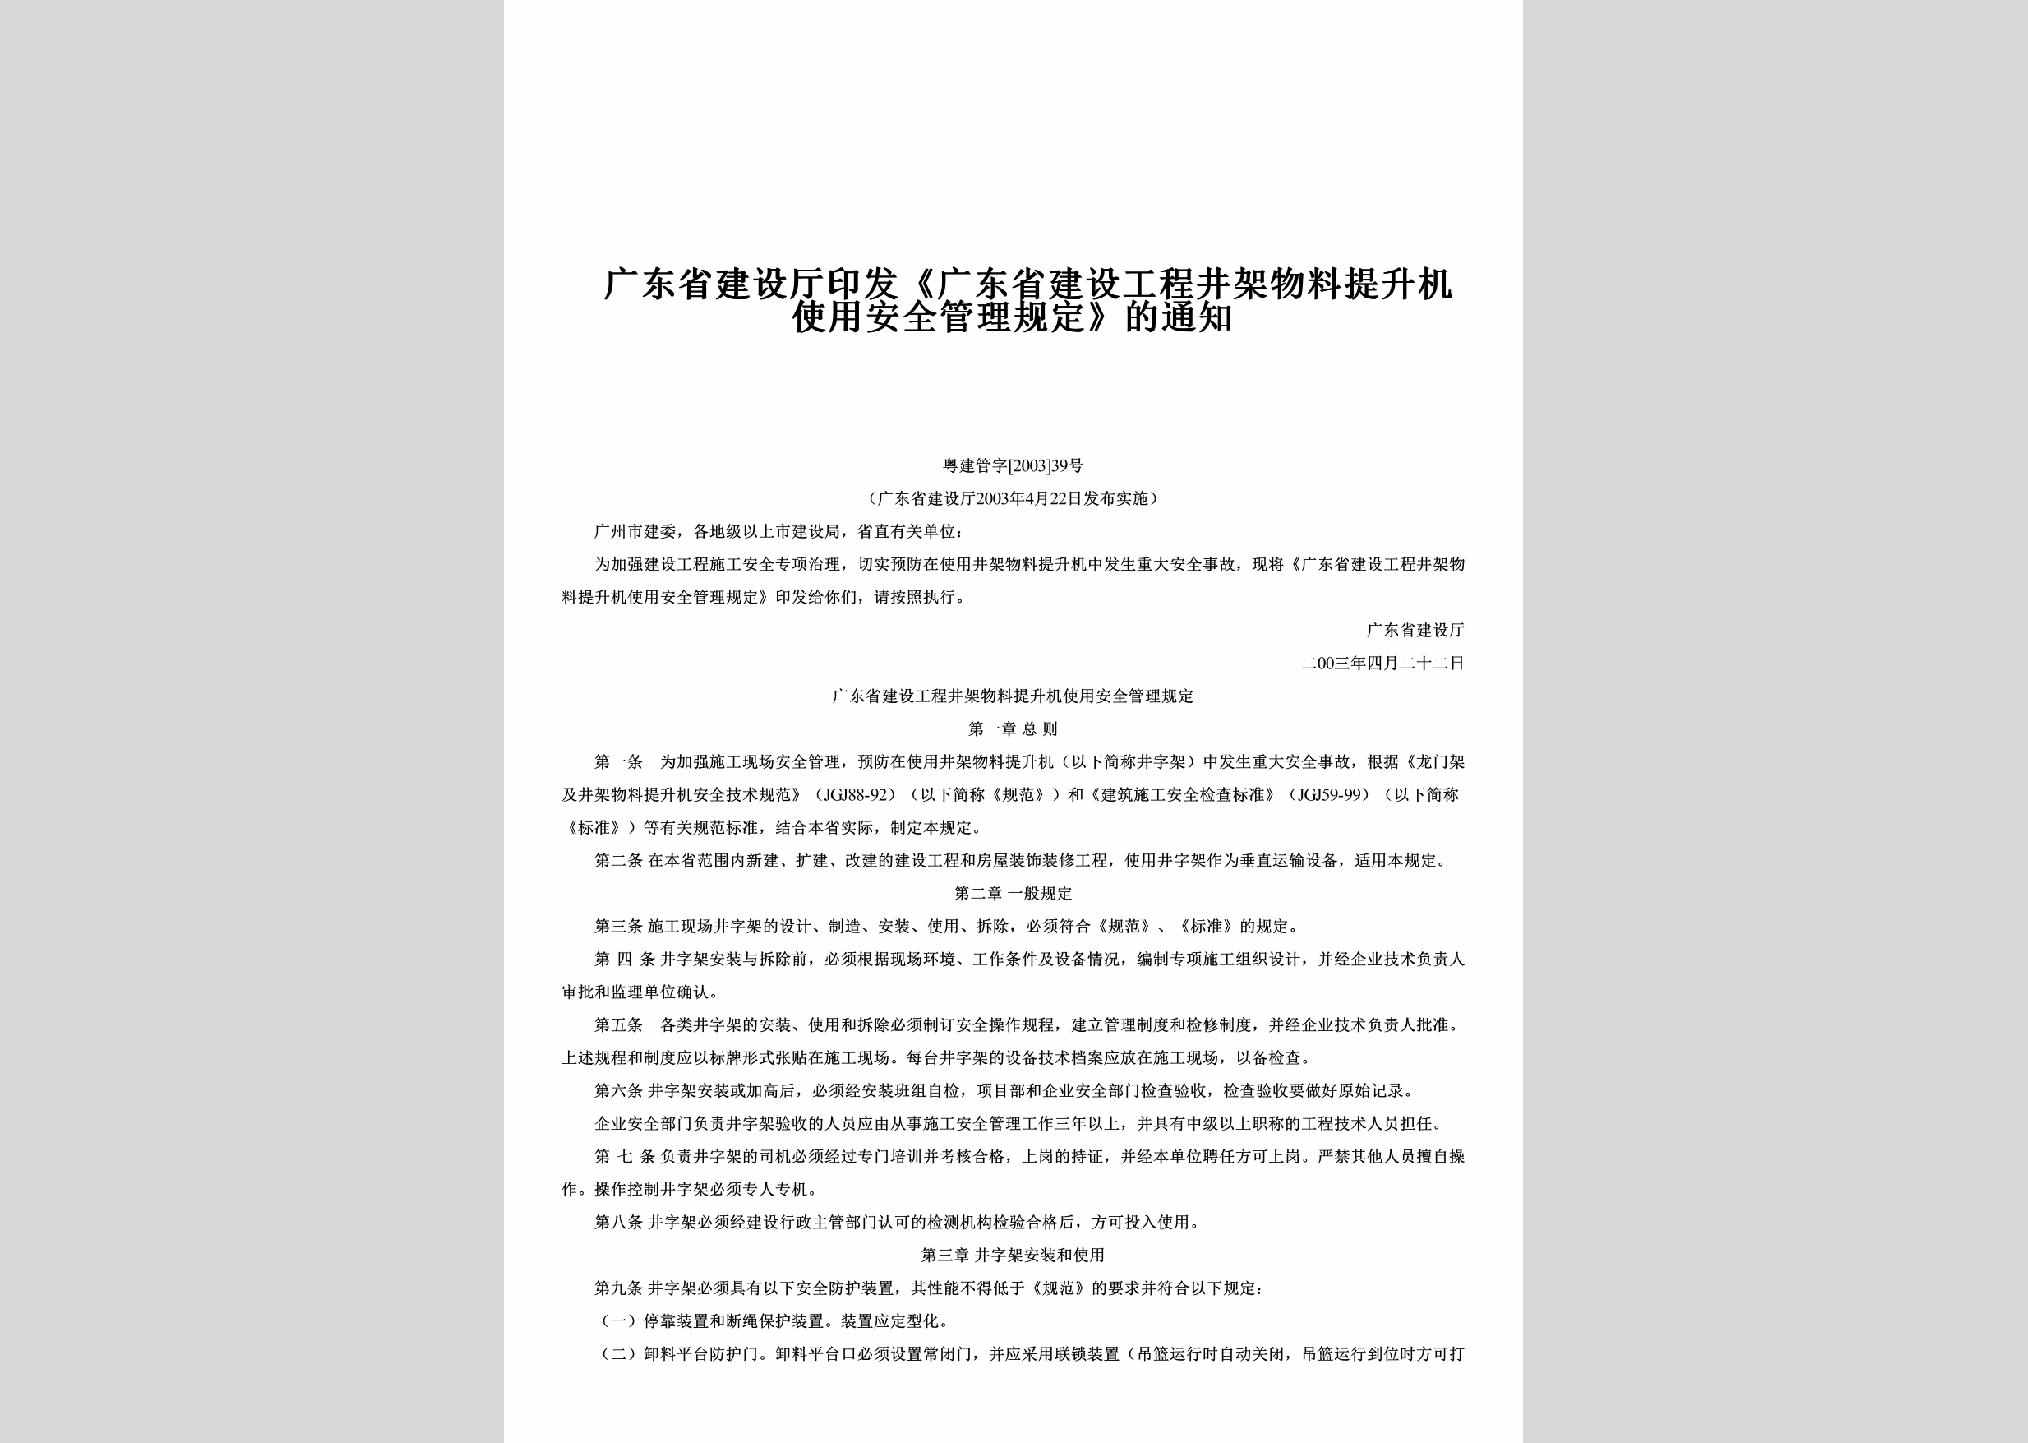 粤建管字[2003]39号：印发《广东省建设工程井架物料提升机使用安全管理规定》的通知